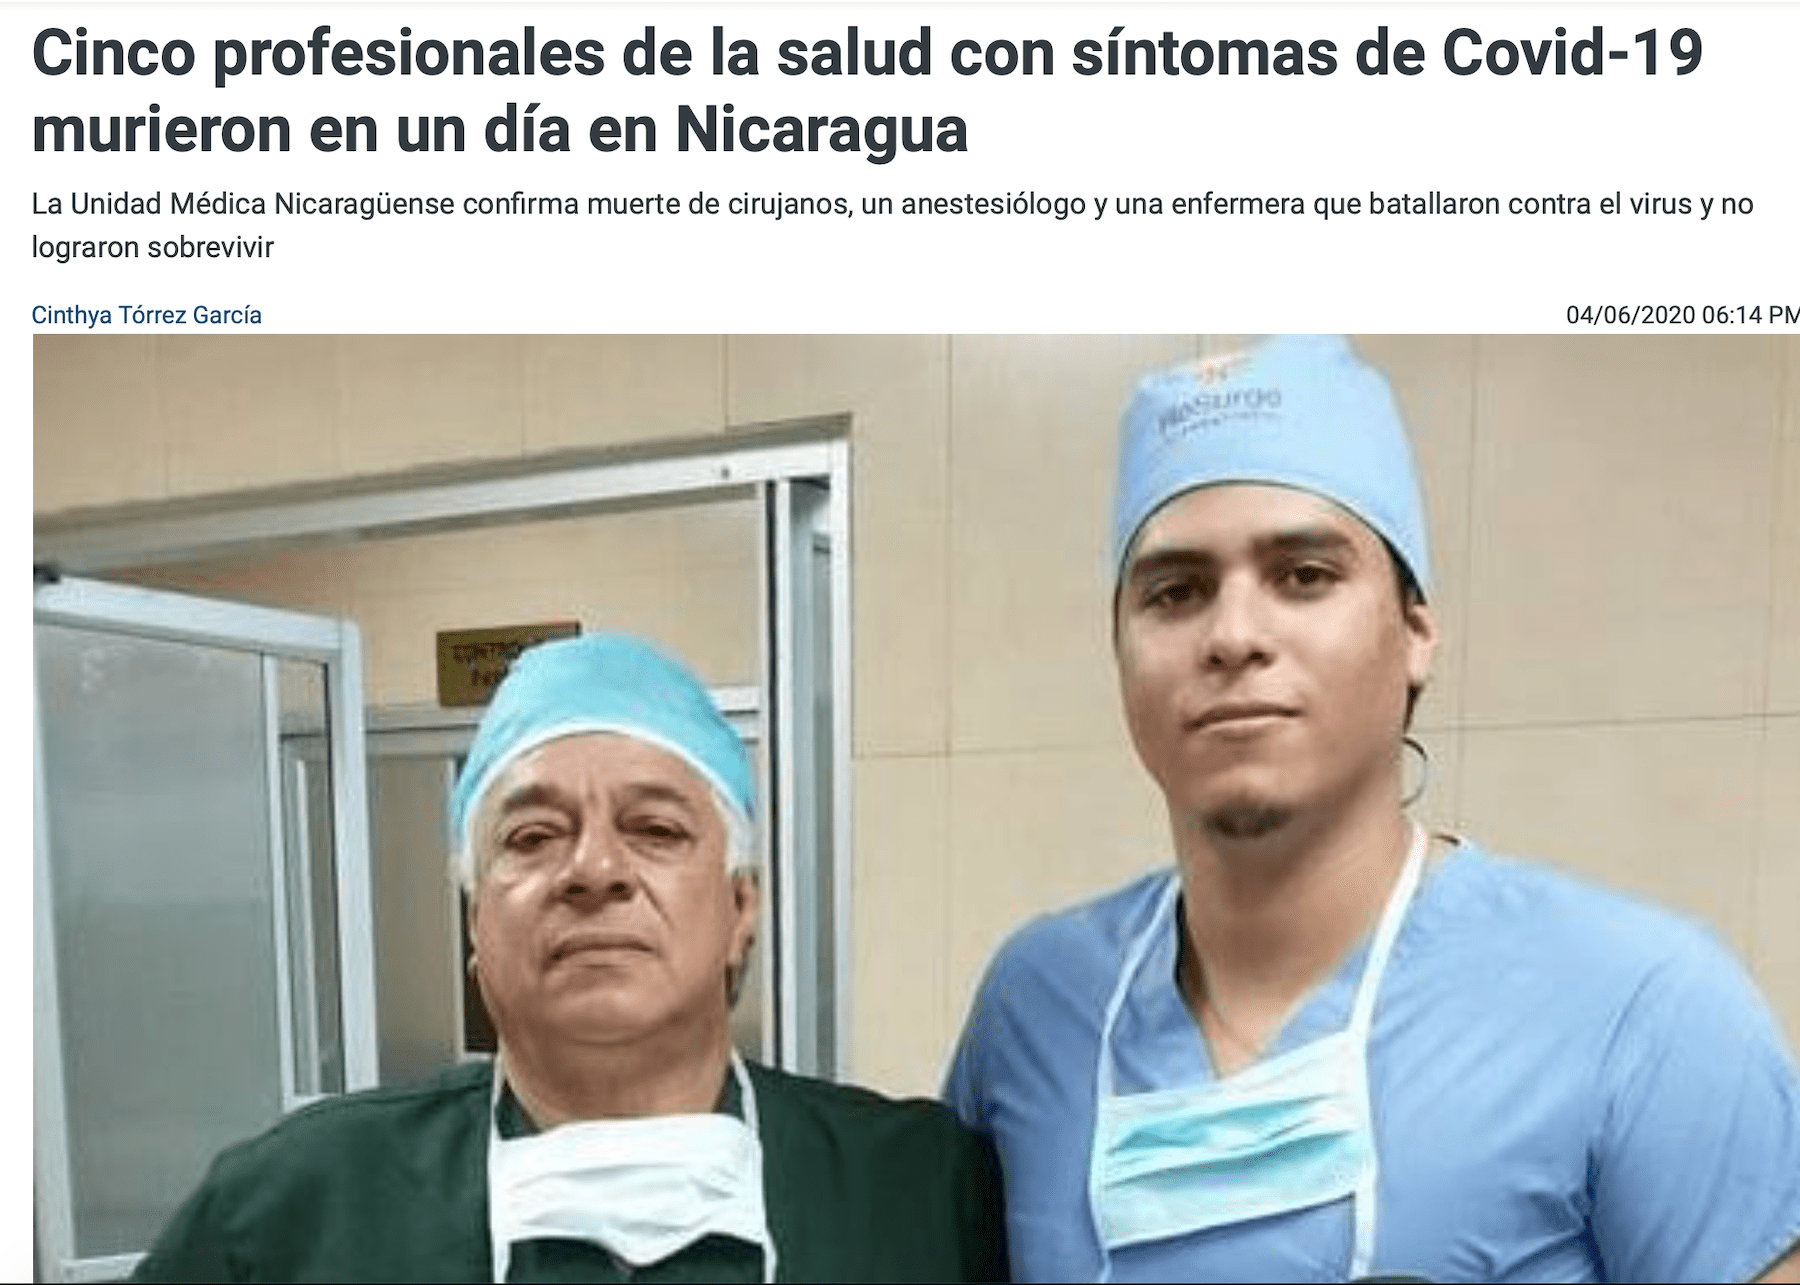 Nicaragua: 5 profesionales de la salud murieron este miércoles con síntomas de COVID-19